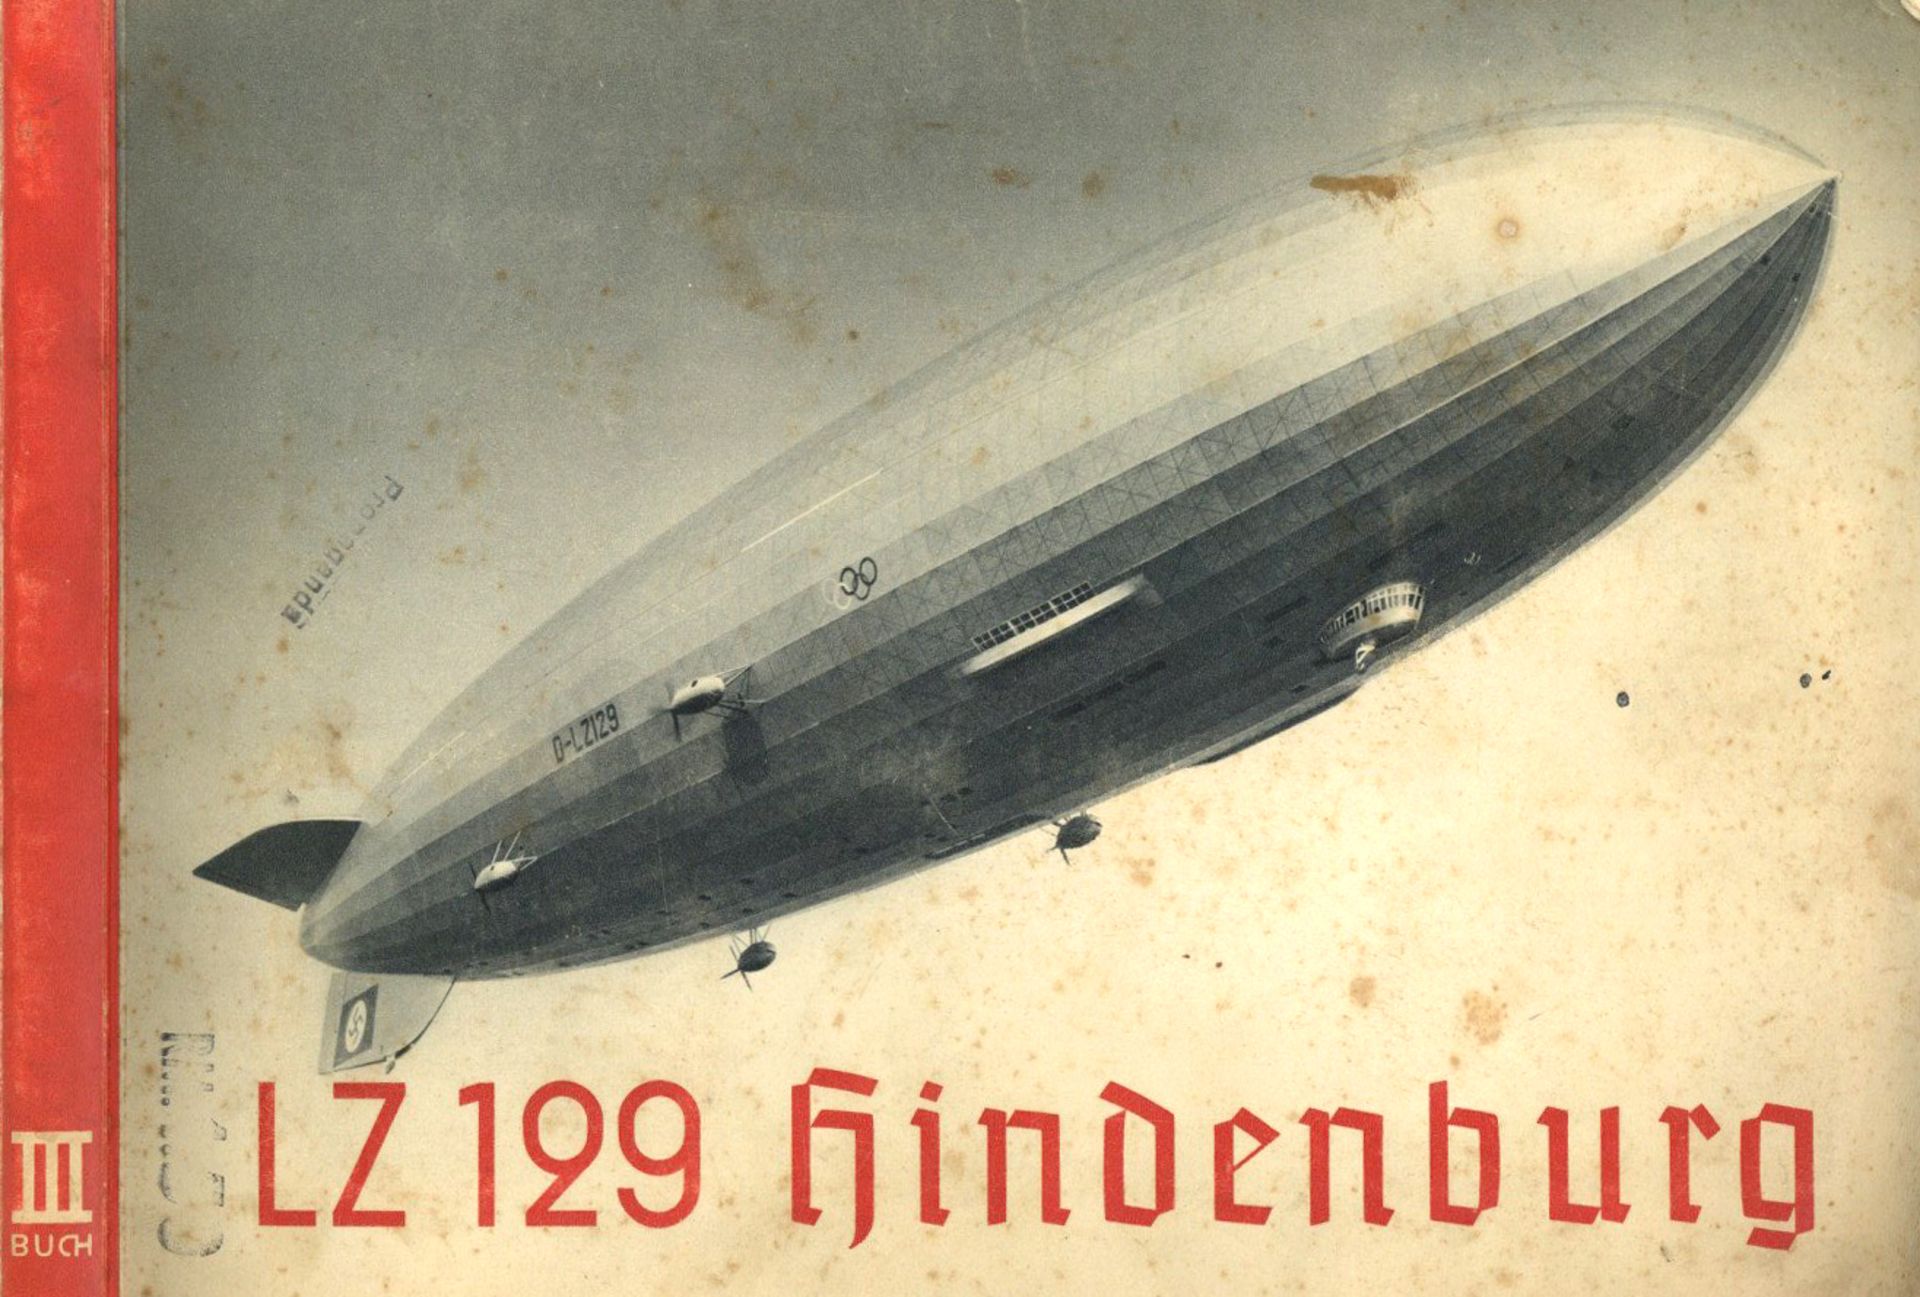 Zeppelin Sammelbild-Album LZ 129 Hindenburg III. Buch, komplett mit 155 Bildern, sehr selten! II